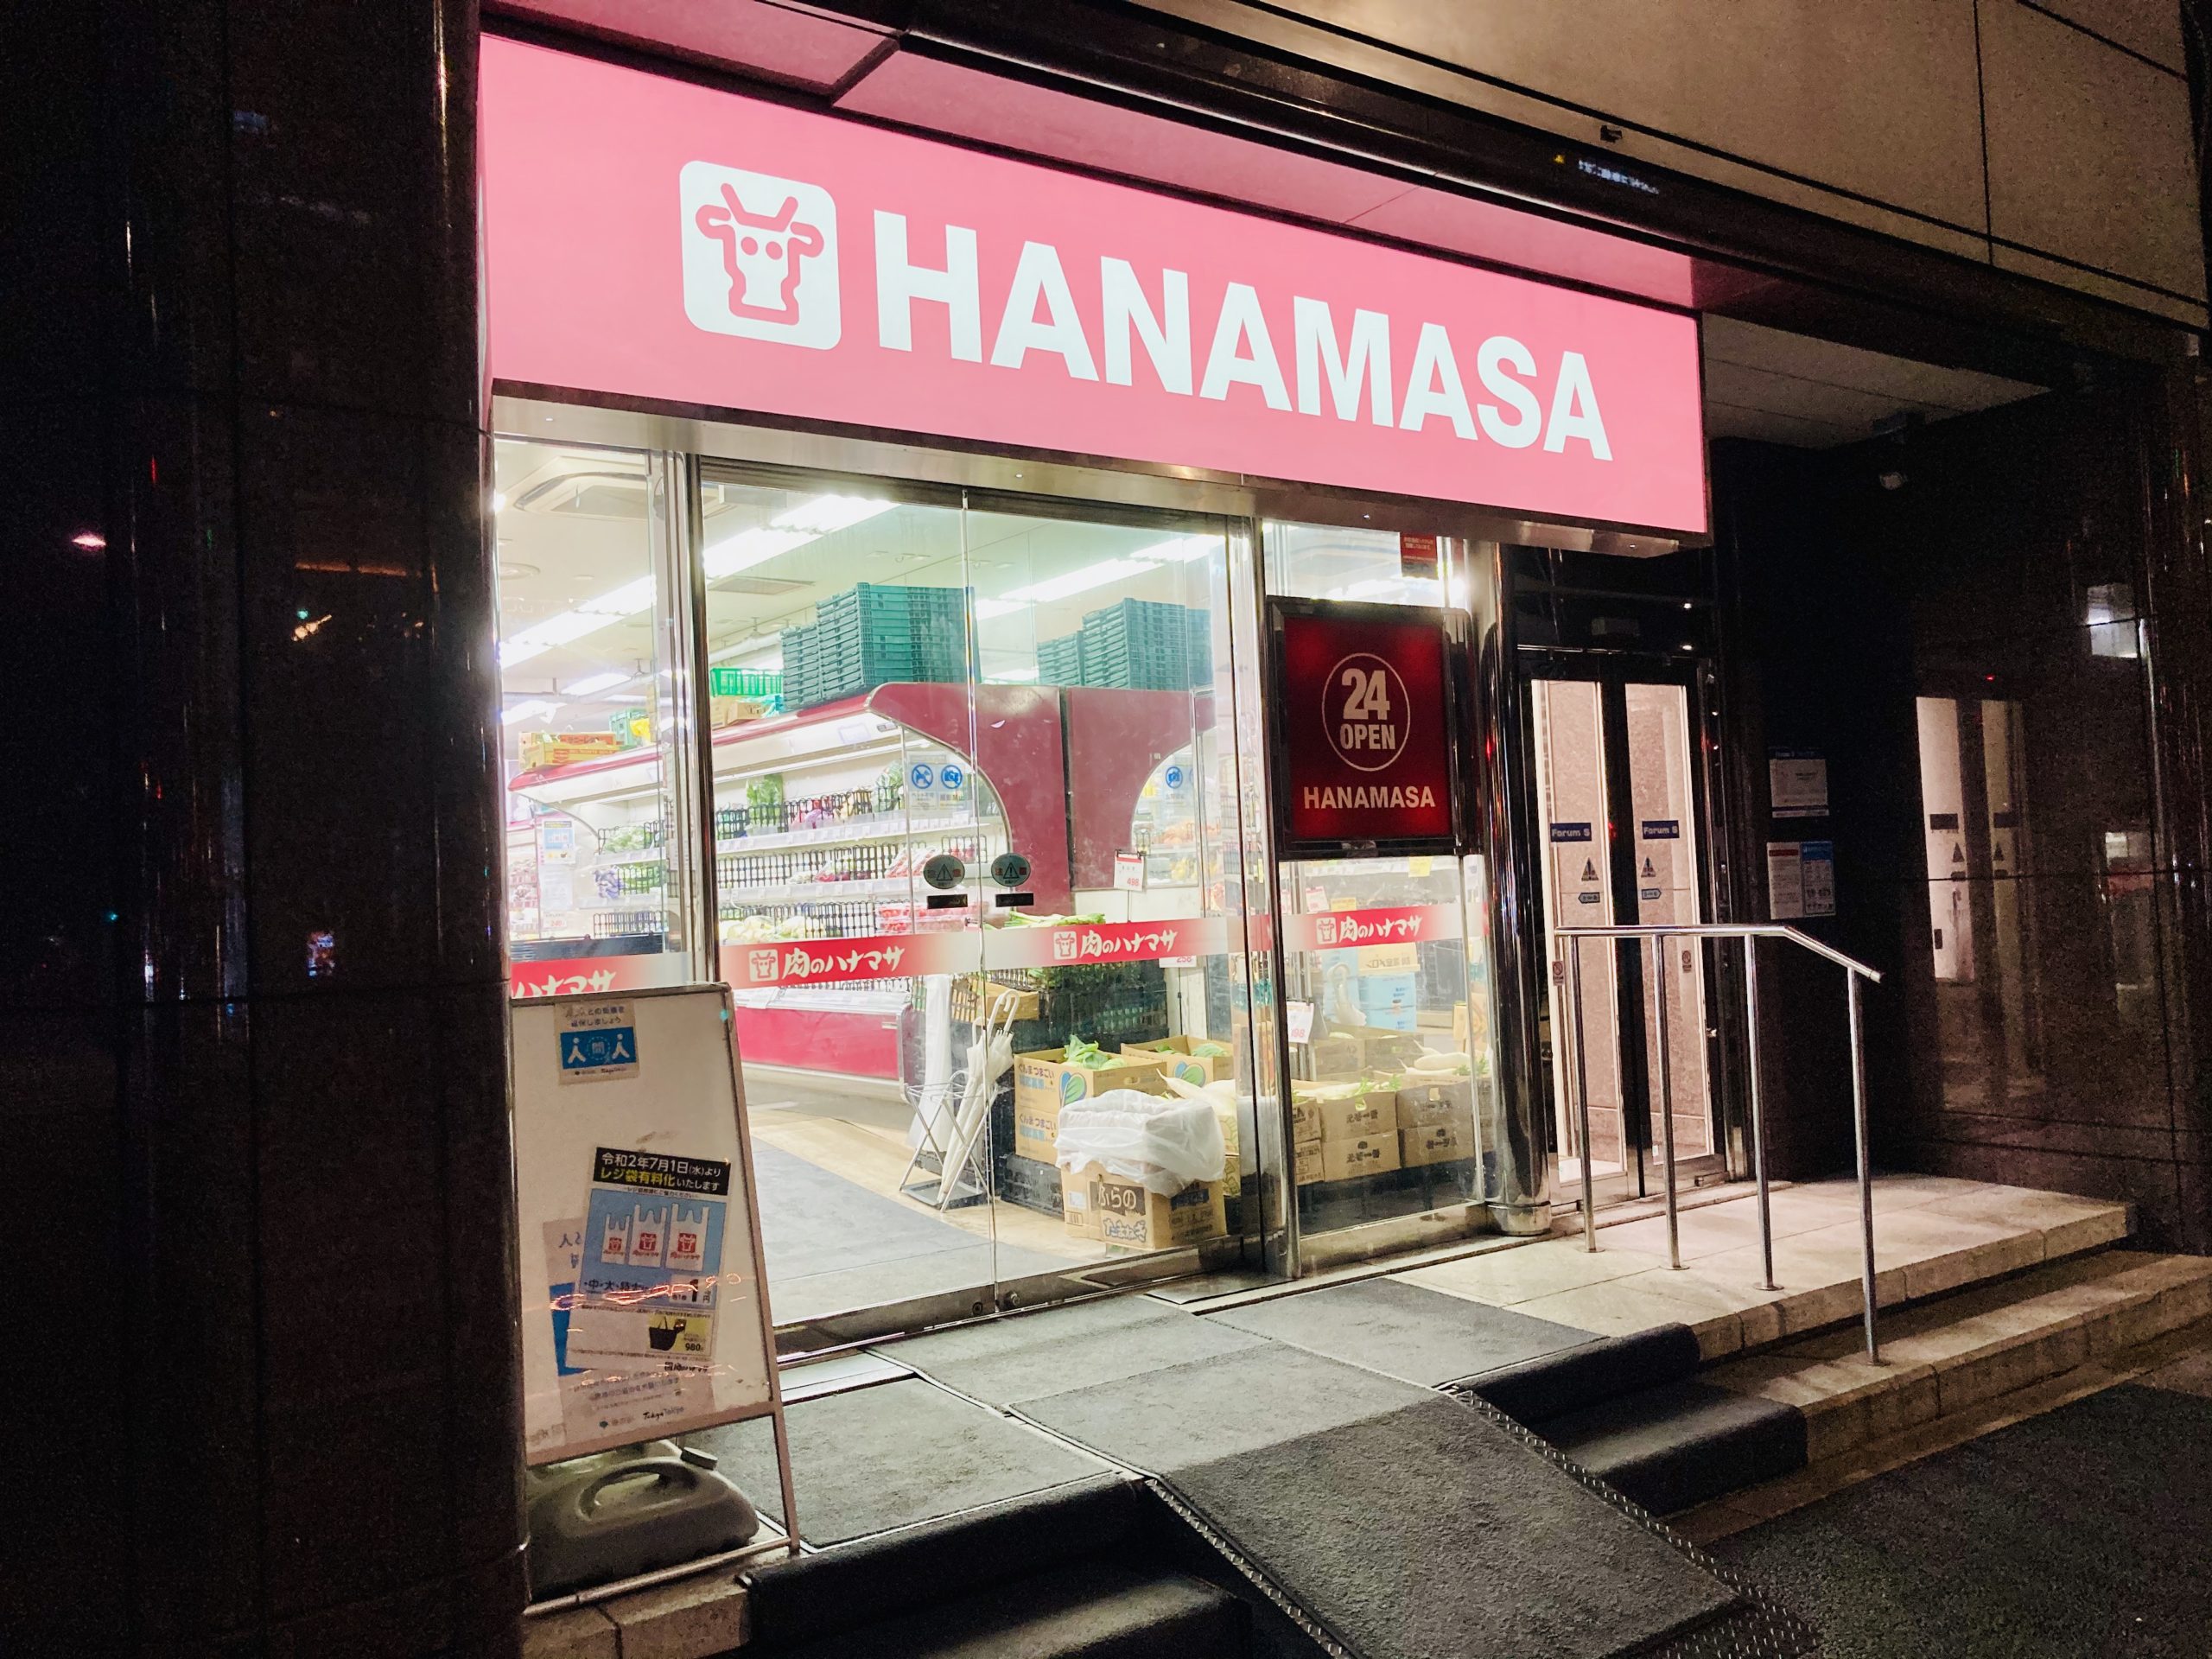 肉のハナマサの価格力でレジ袋は特大でも１円 港区にも店舗が多い 港区ブログ